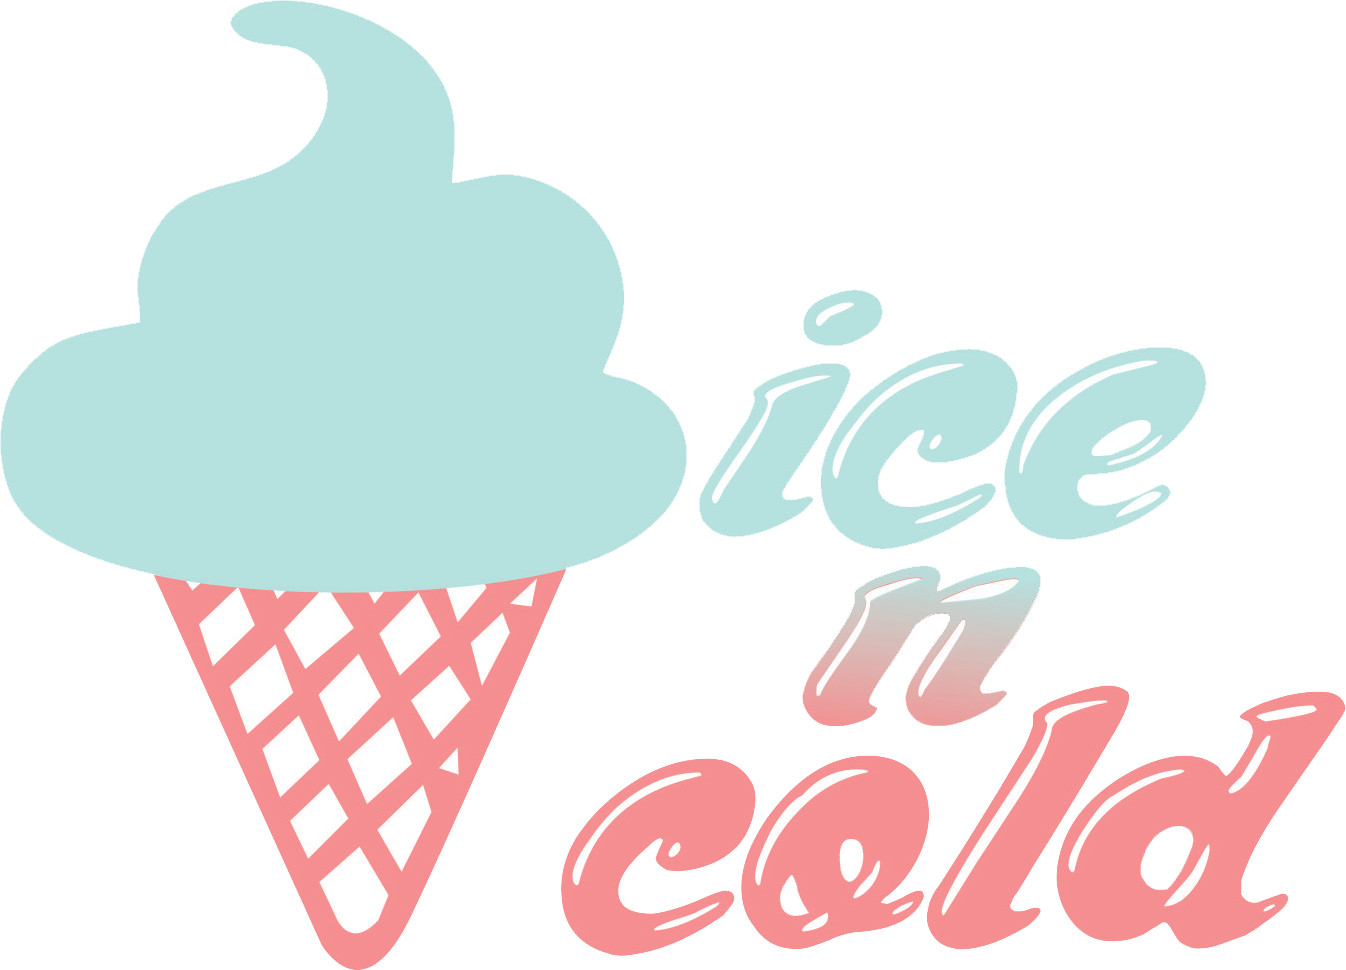 icecream clipart cold